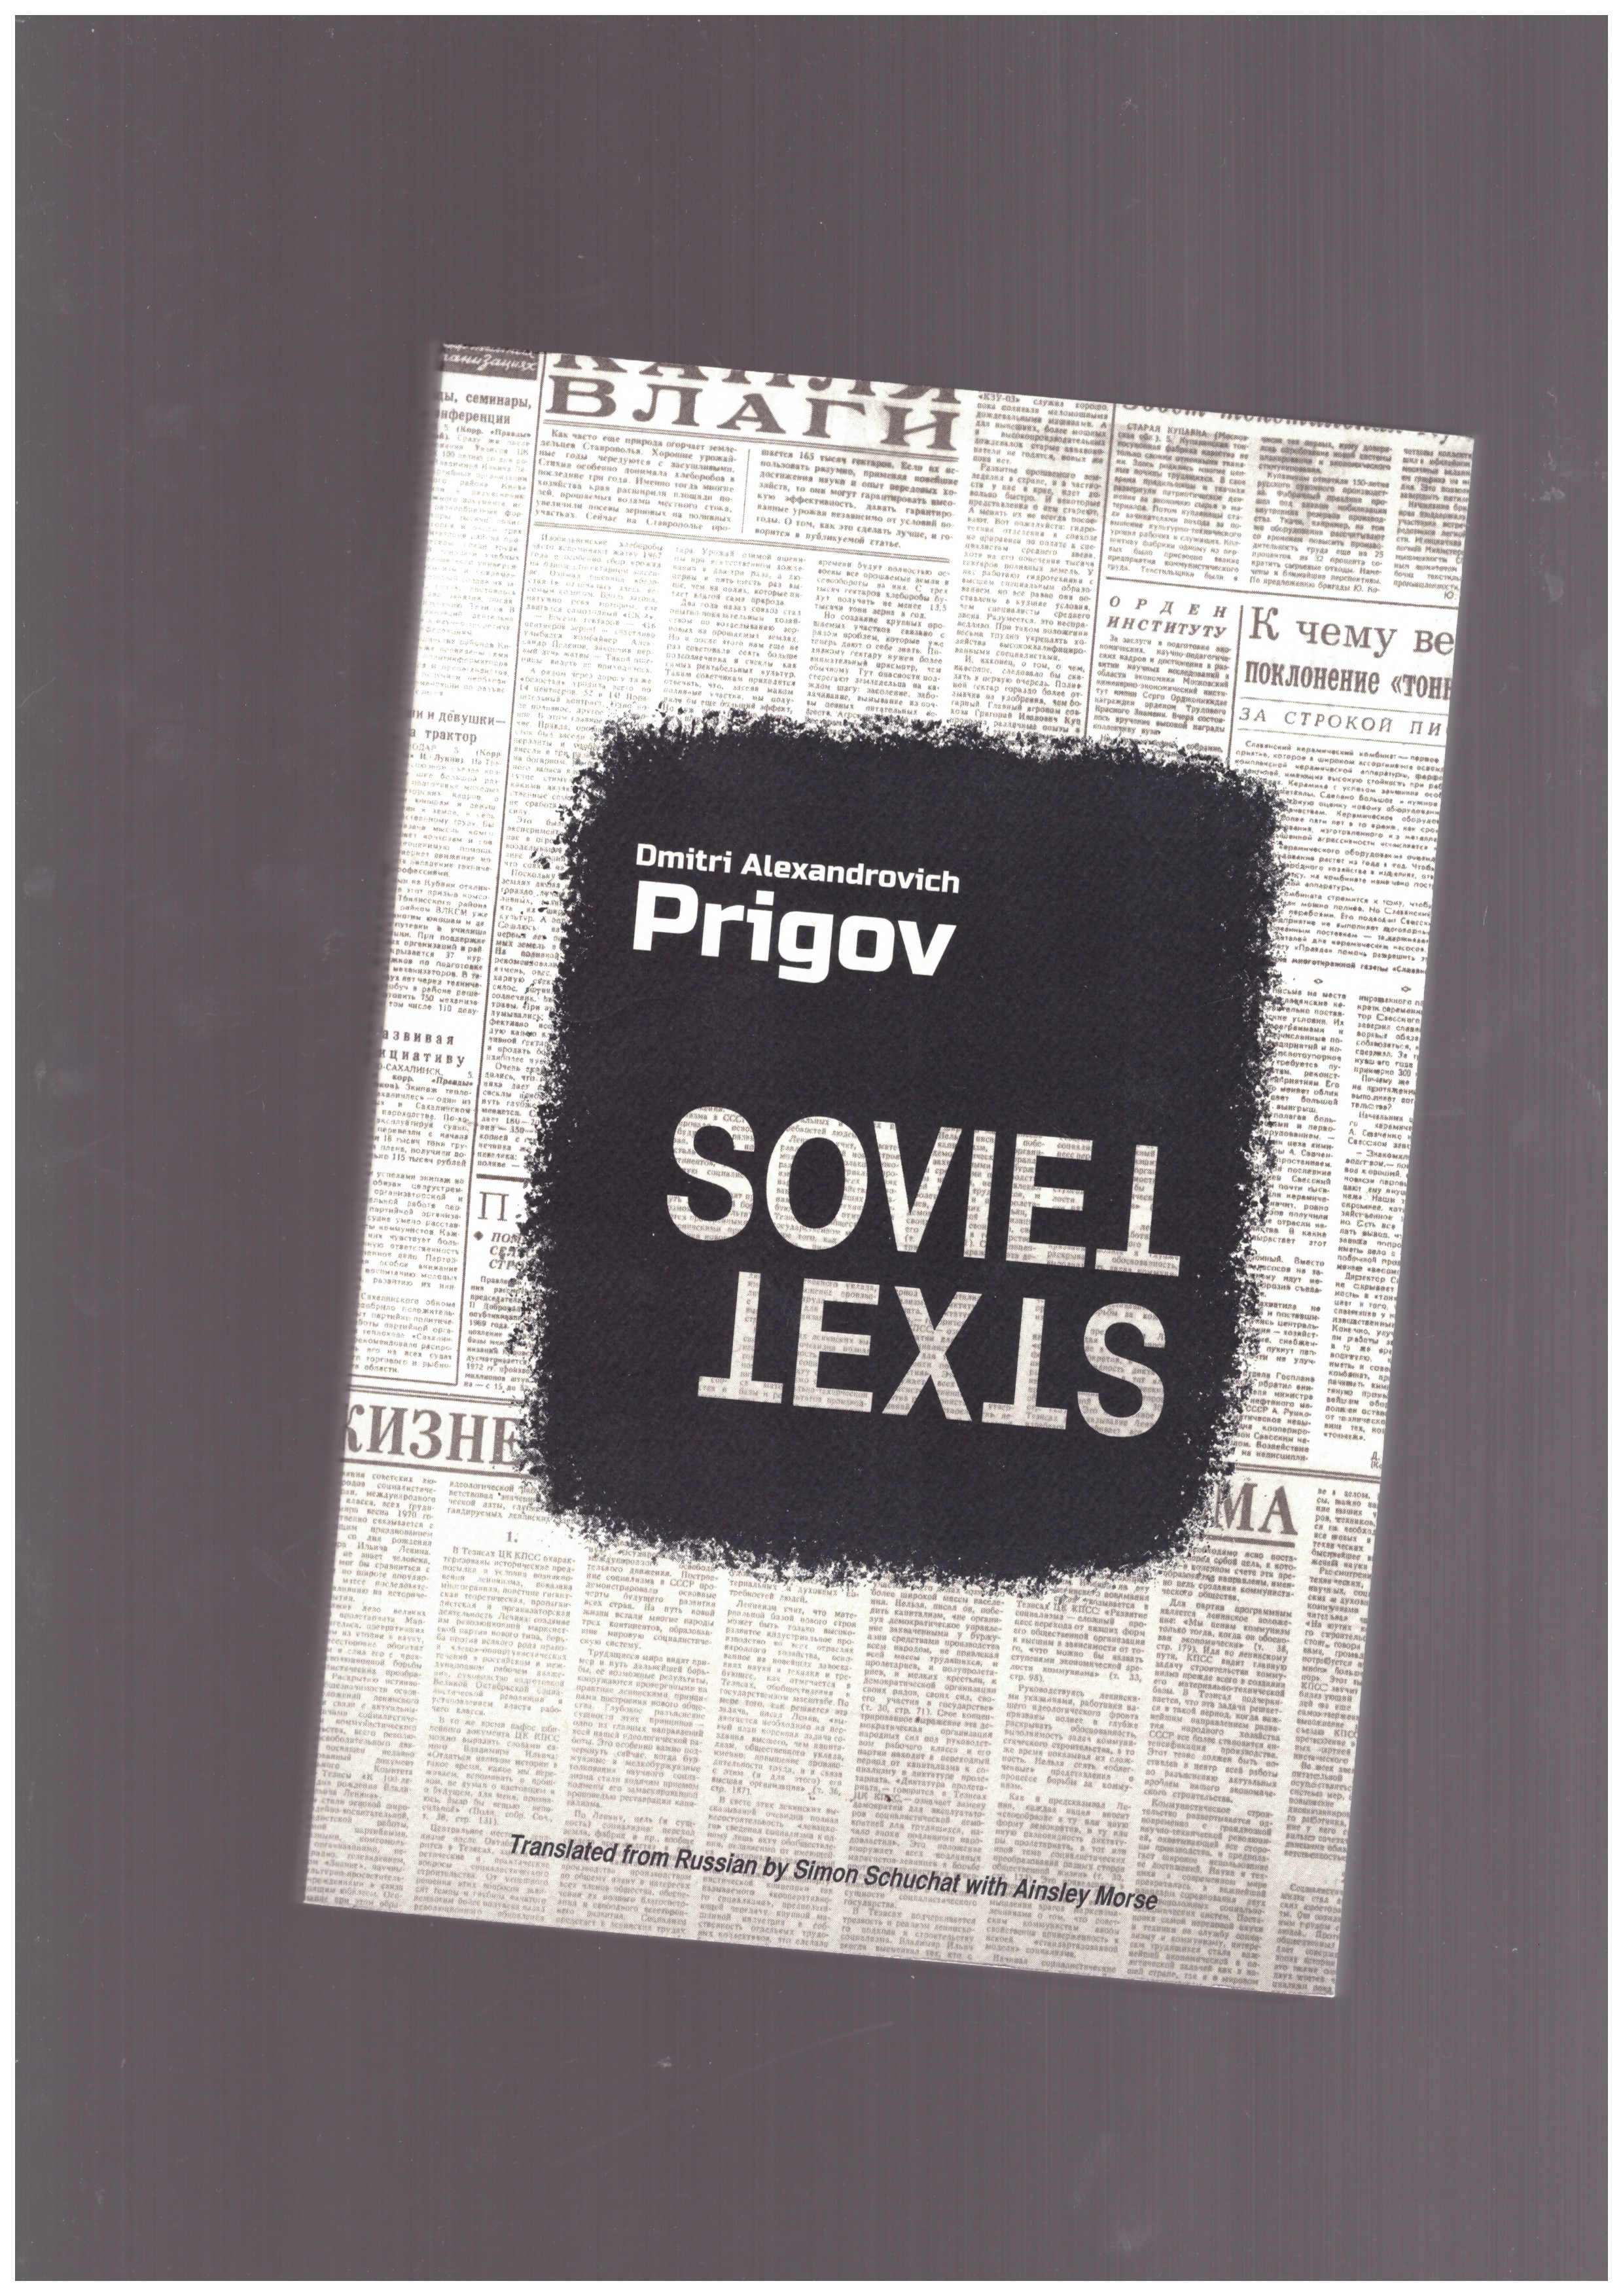 PRIGOV, Dmitri Alexandrovich - Soviet Texts